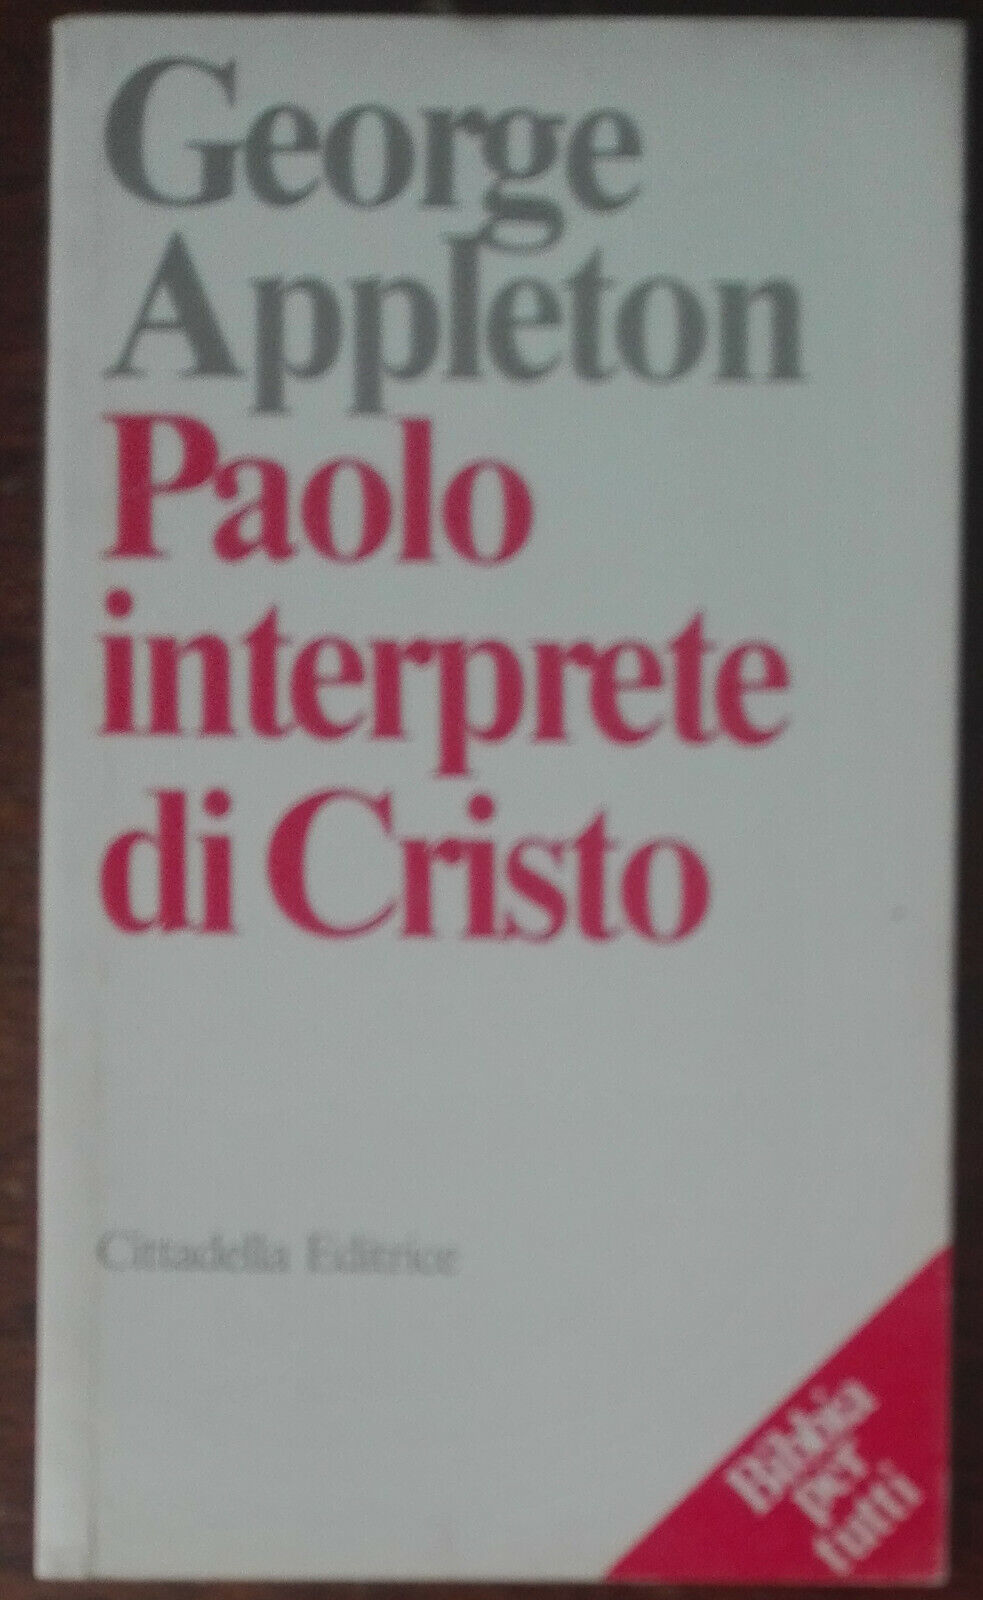 Paolo interprete di Cristo - George Appleton - Cittadella, 1991 - A libro usato